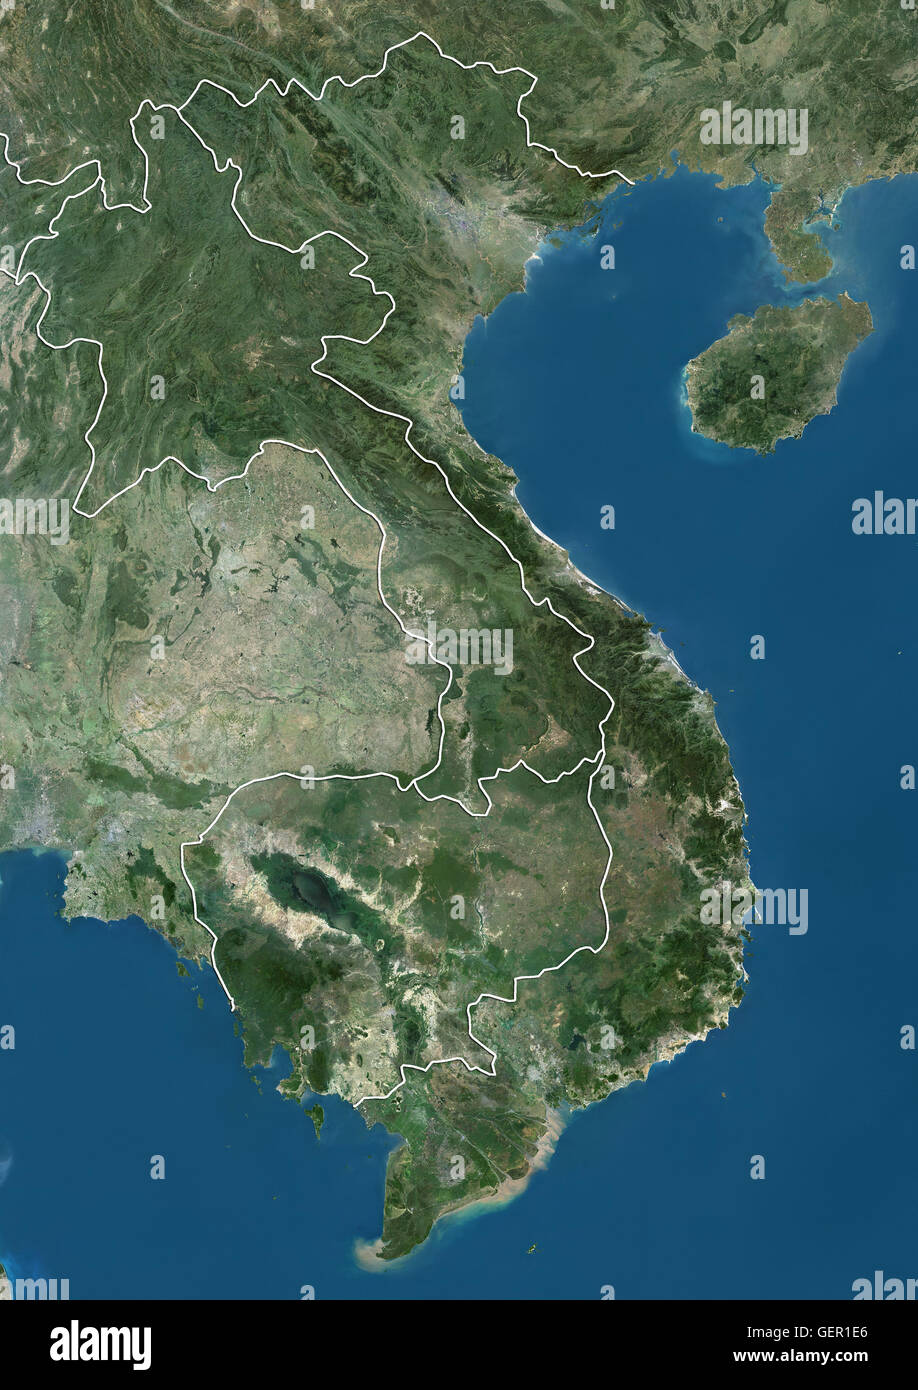 Vue Satellite du Vietnam, Cambodge et Laos (avec des frontières). Cette image a été compilé à partir de données acquises par les satellites Landsat. Banque D'Images